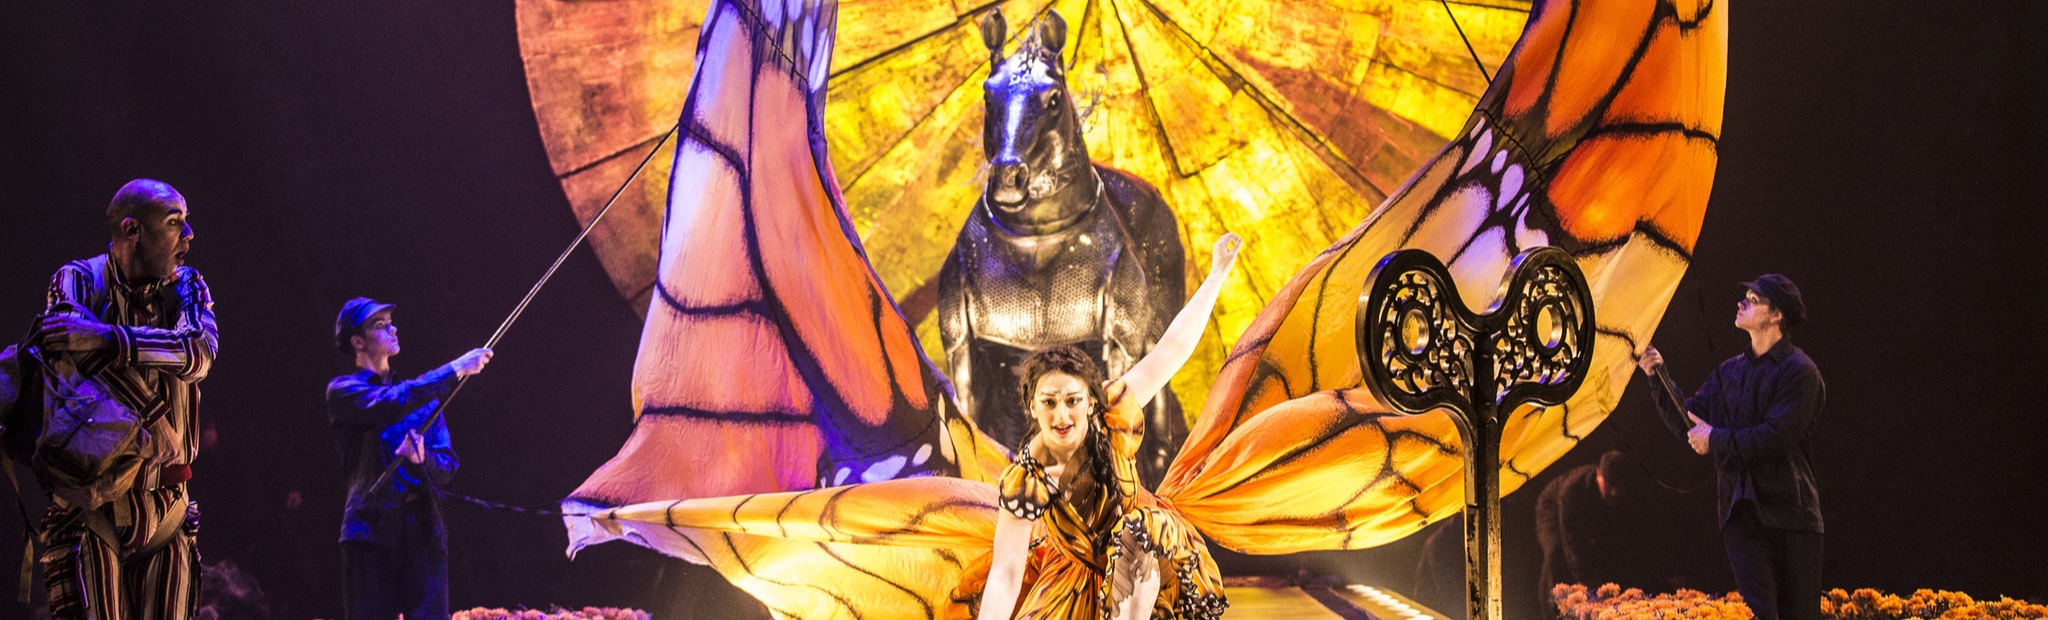 Luzia. Cirque du Soleil Москва. Пространство между сном и реальностью.